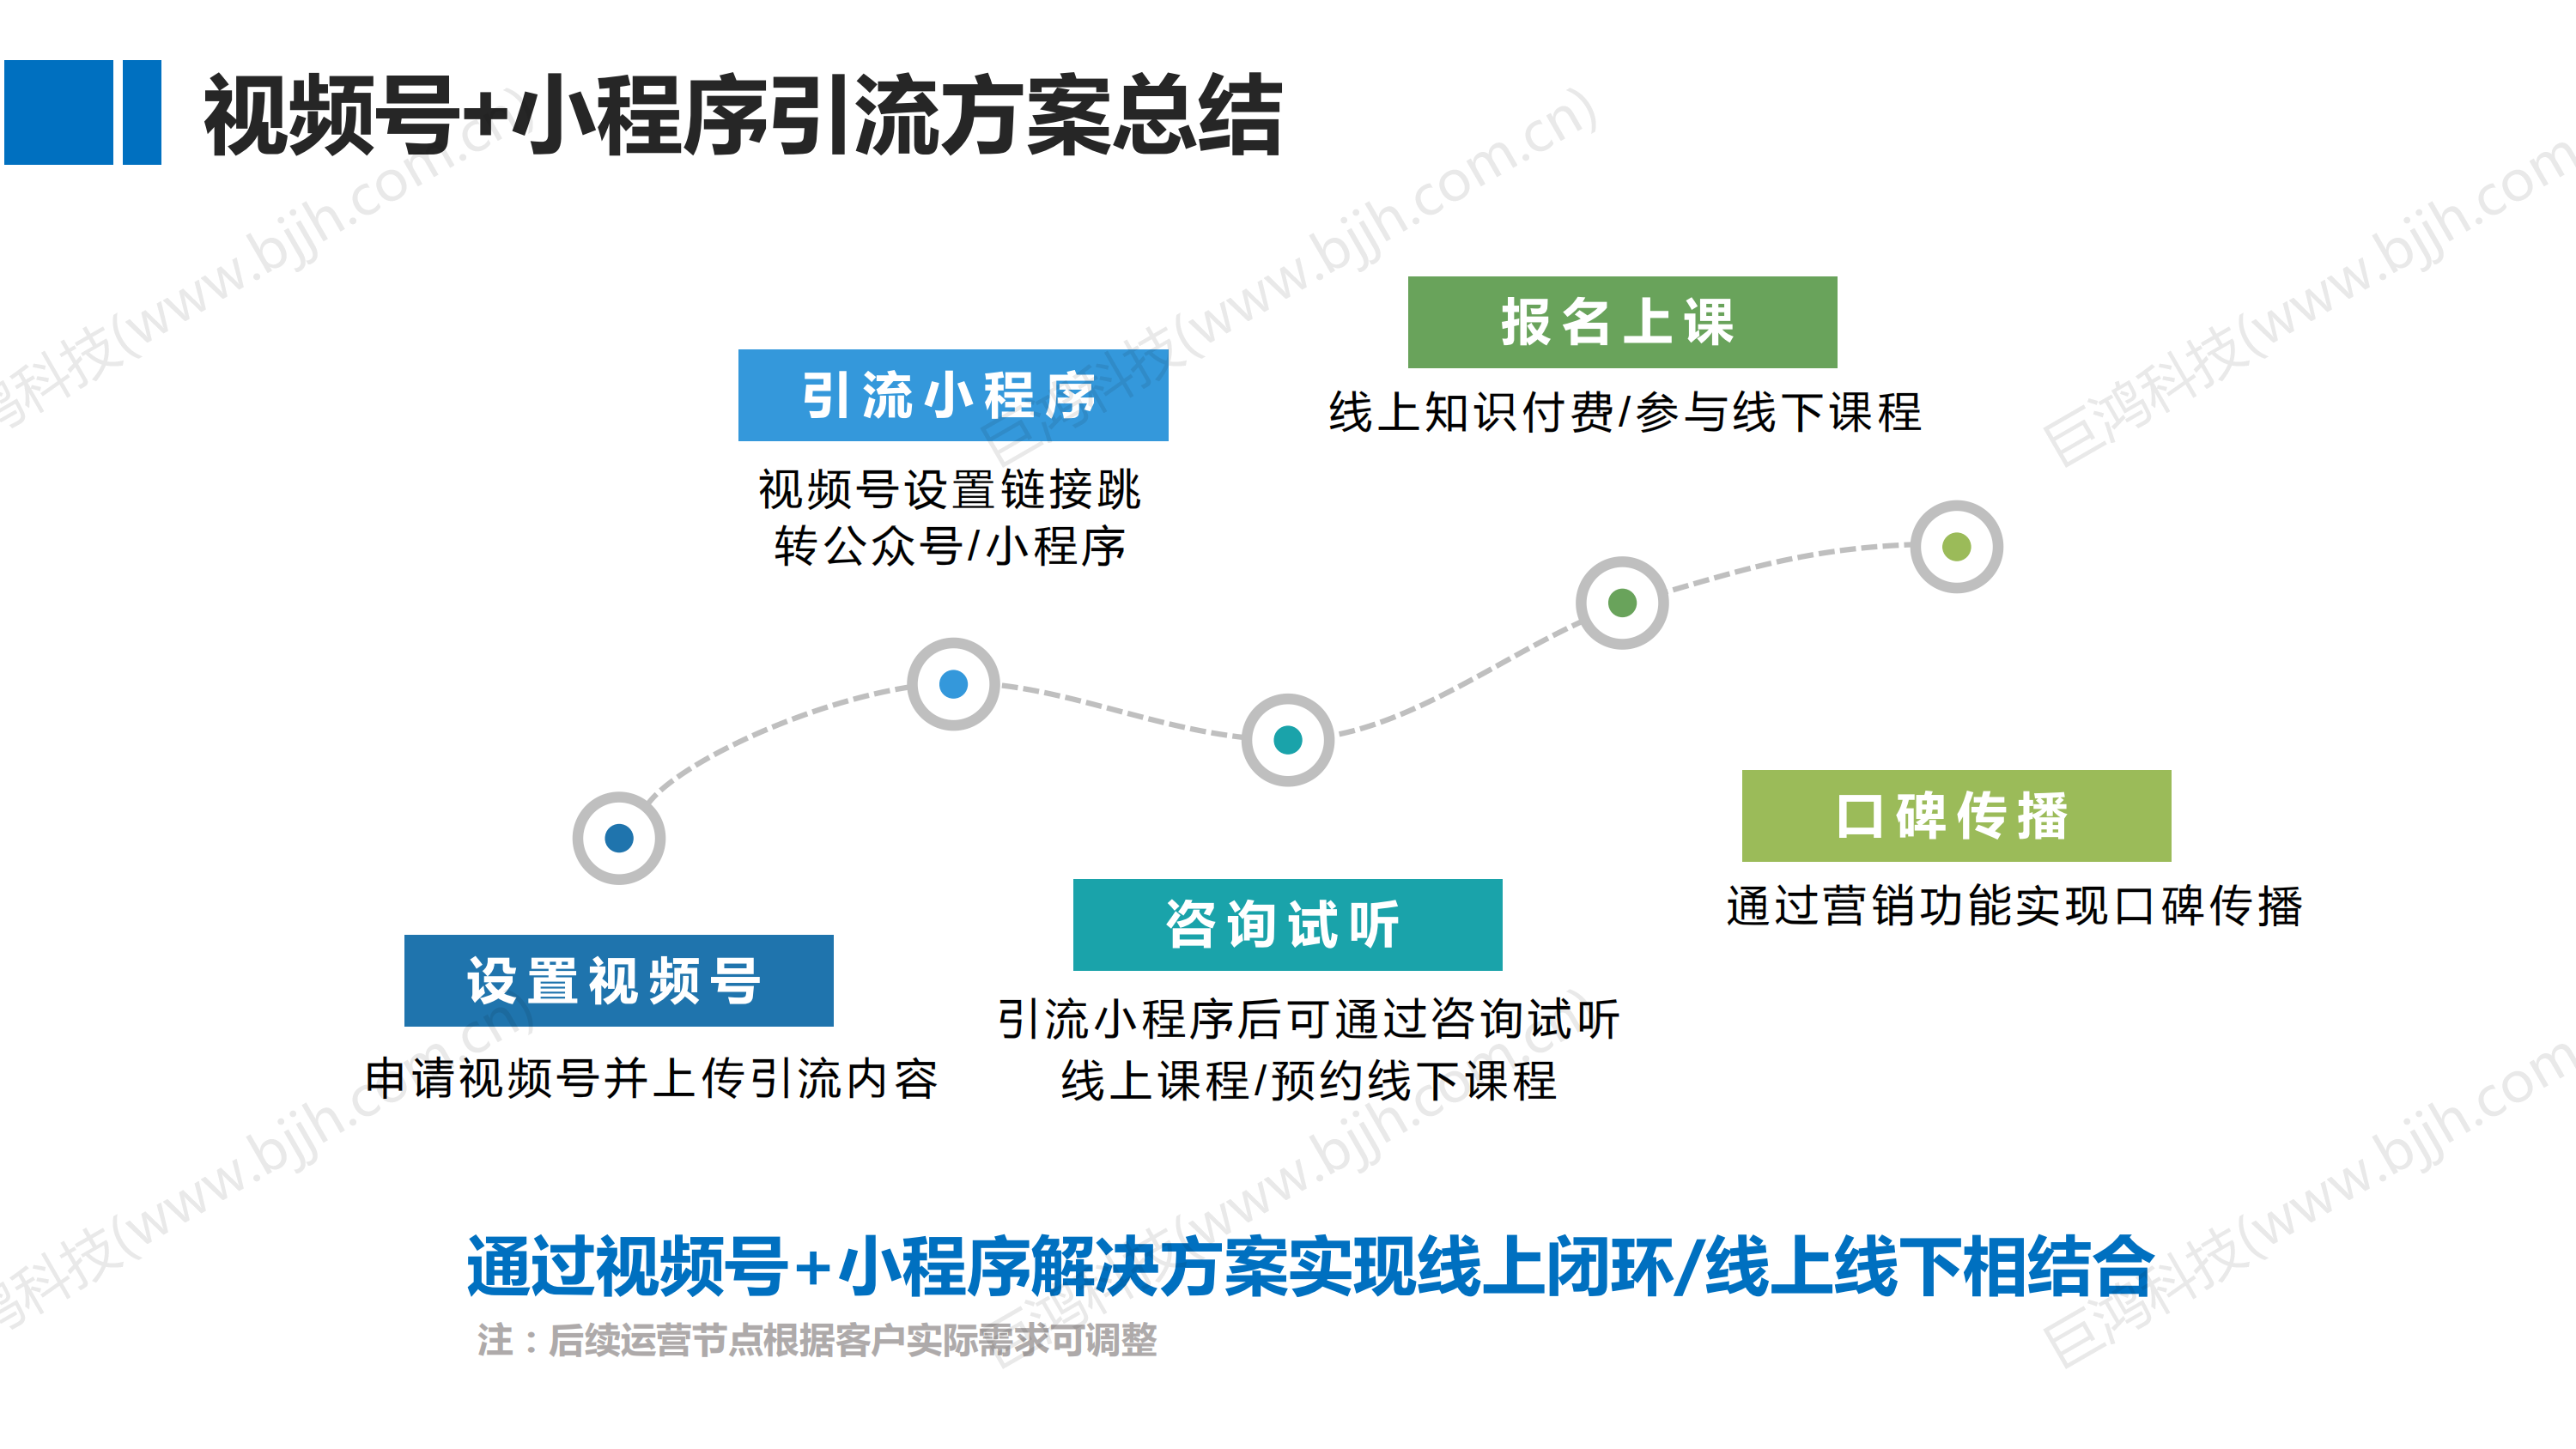 【行业方案】教培机构一站式私域流量解决方案(图14)